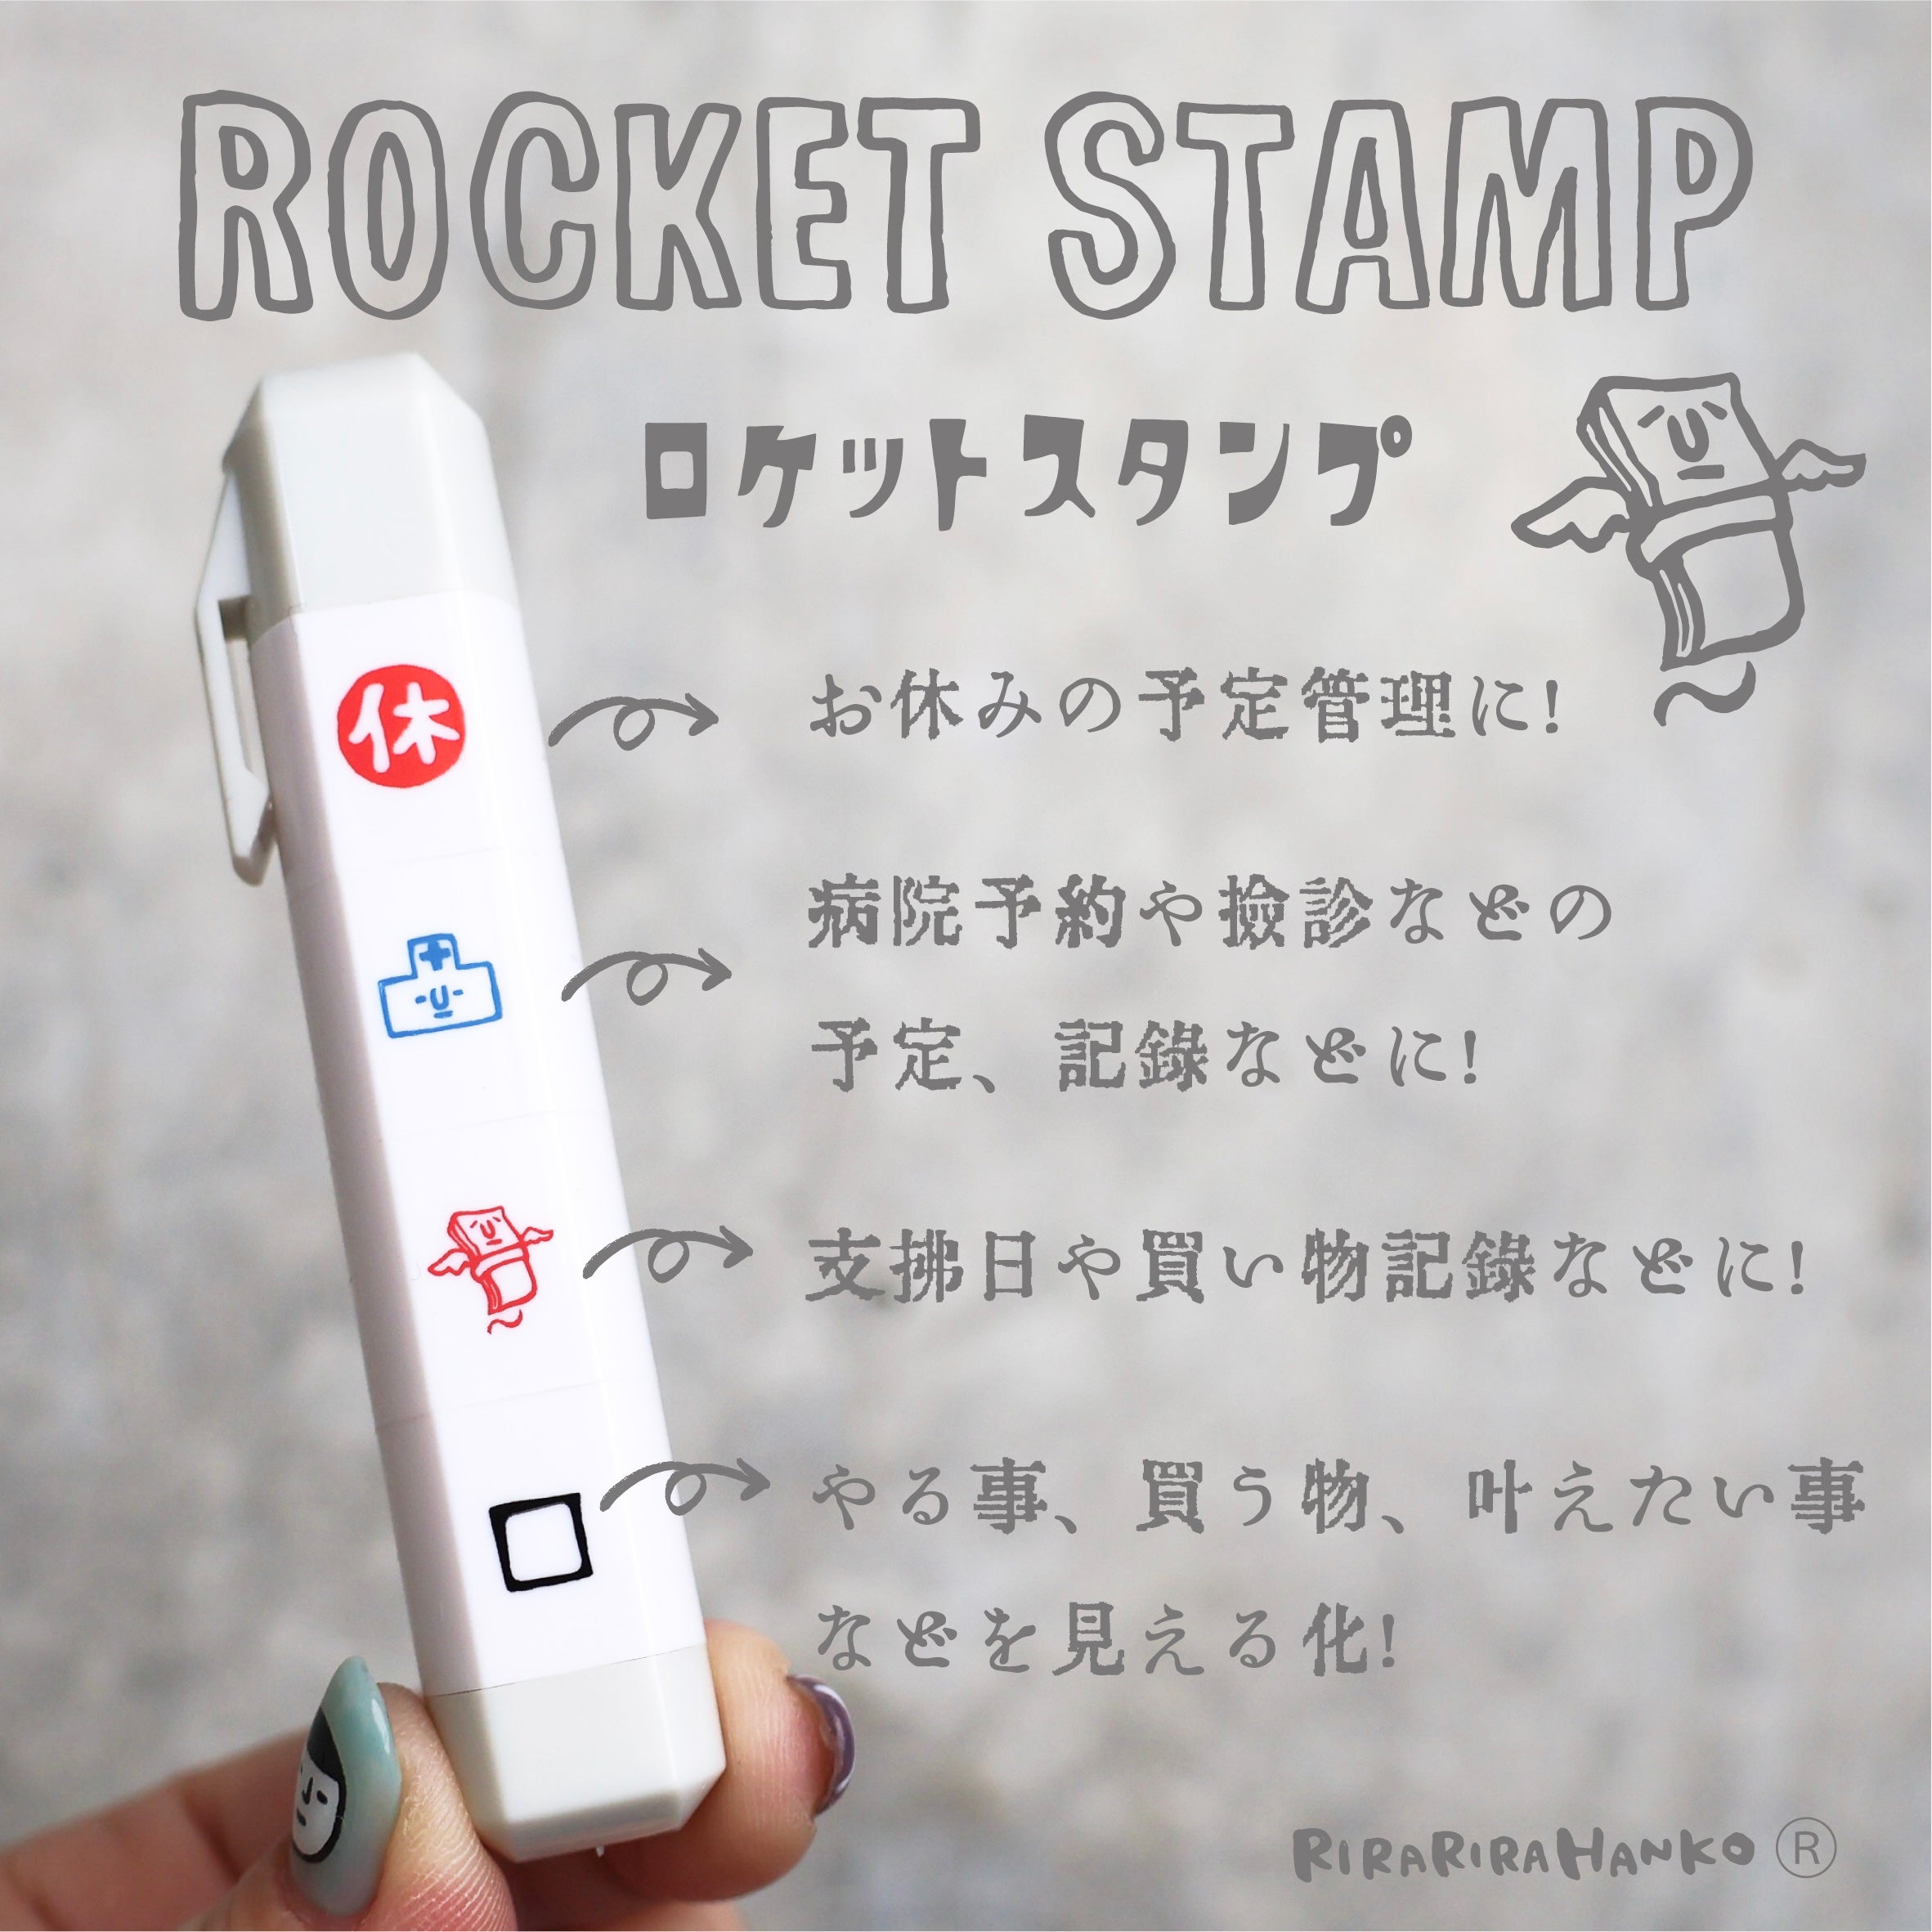 Rocket Stamp (LIFE2)